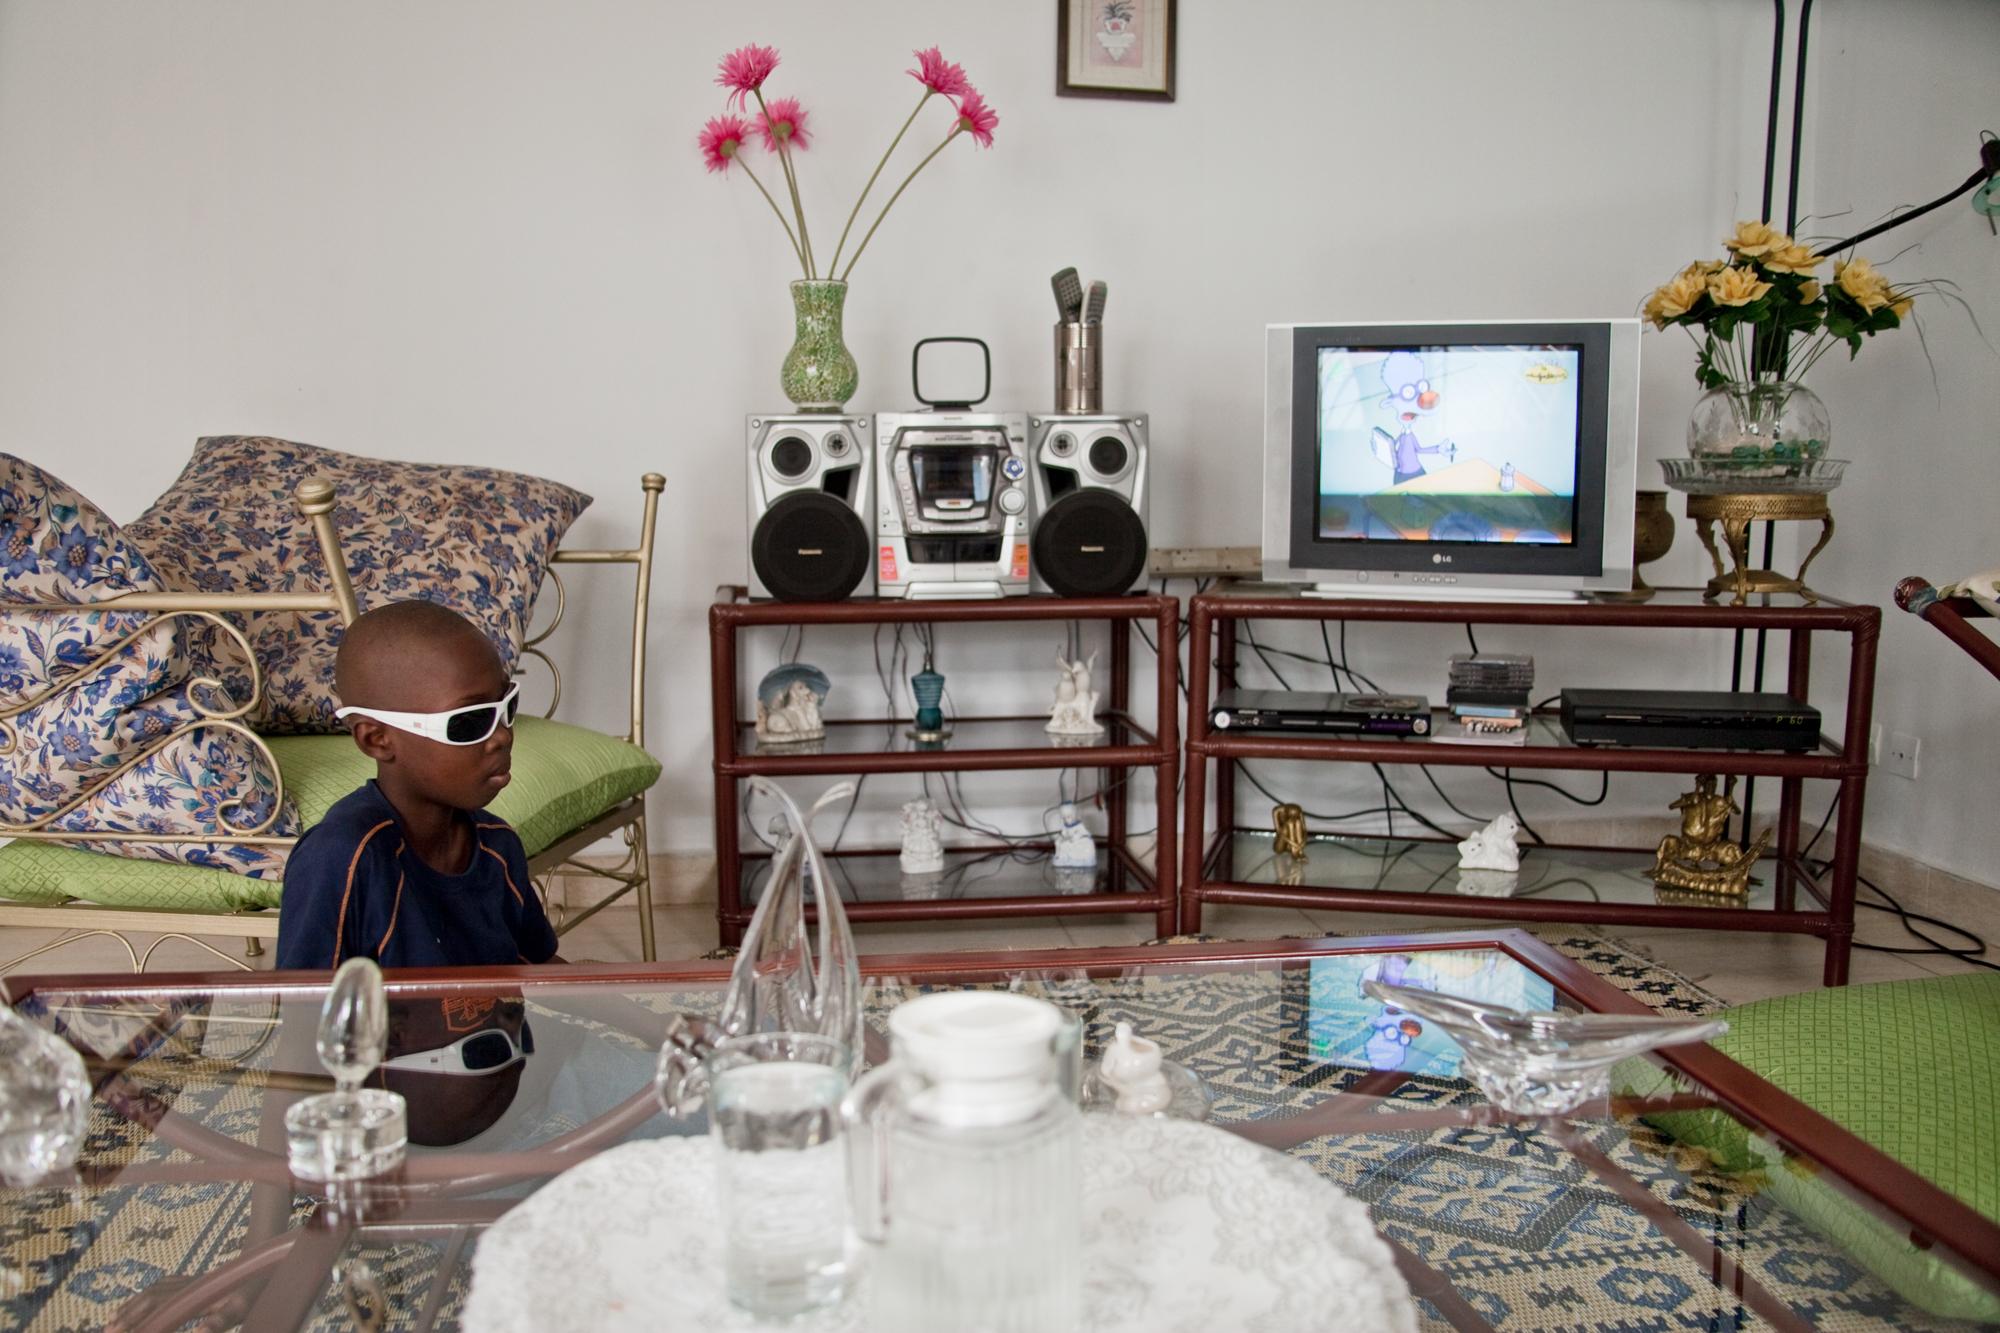 Blind School, Cote d'Ivoire (2010)